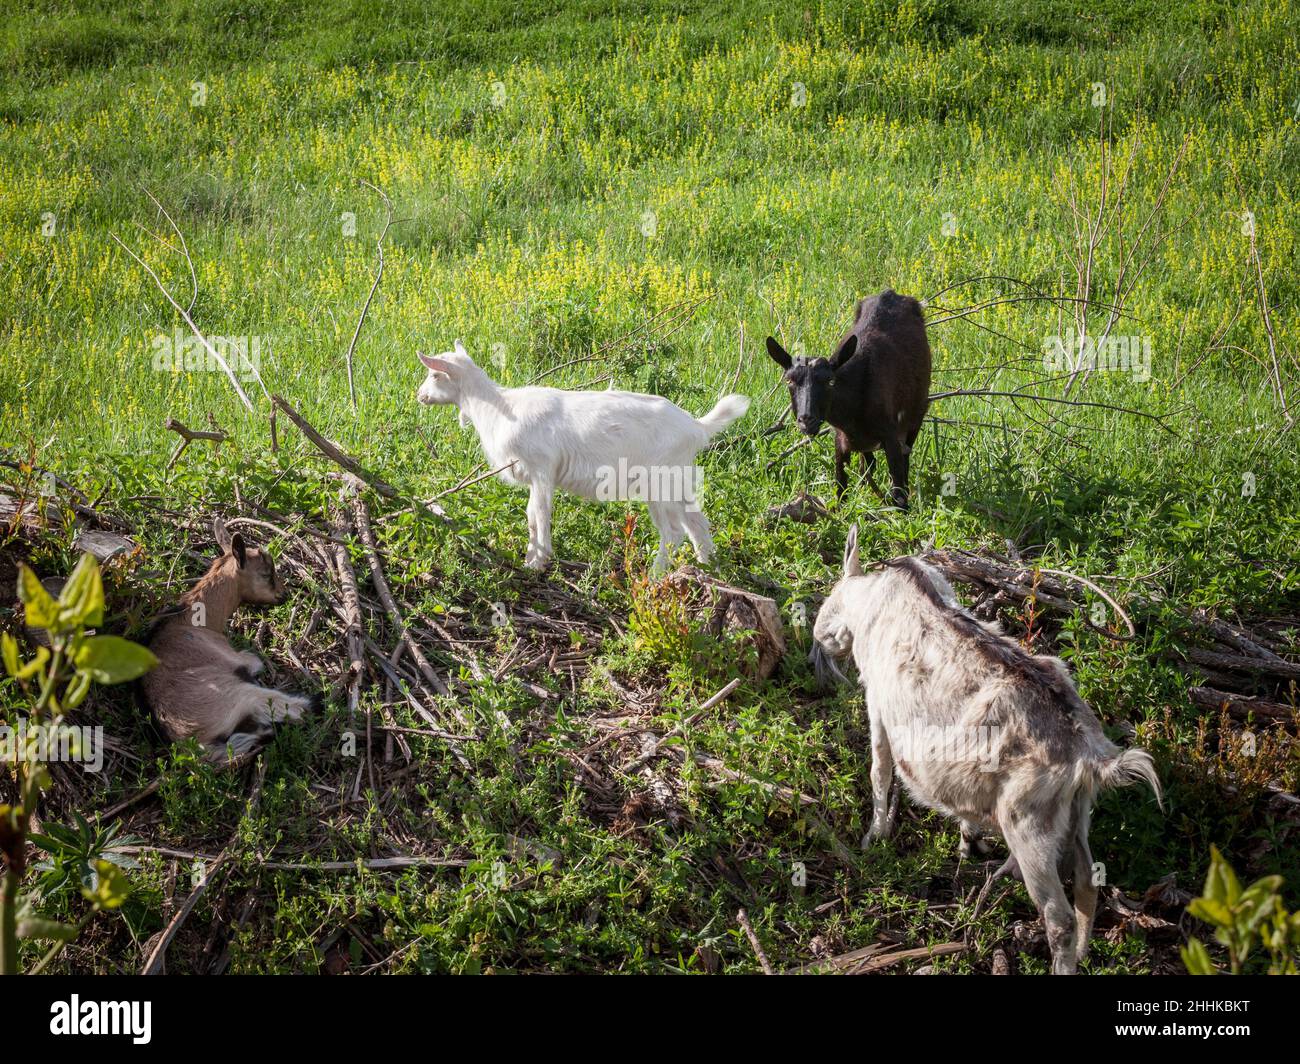 Bild von einer jungen Ziege, eine weiße Ziege aus Vieh essen Gras in einem ländlichen landwirtschaftlichen Feld umgeben von älteren Ziegen, schwarz und braun, in einem Stockfoto